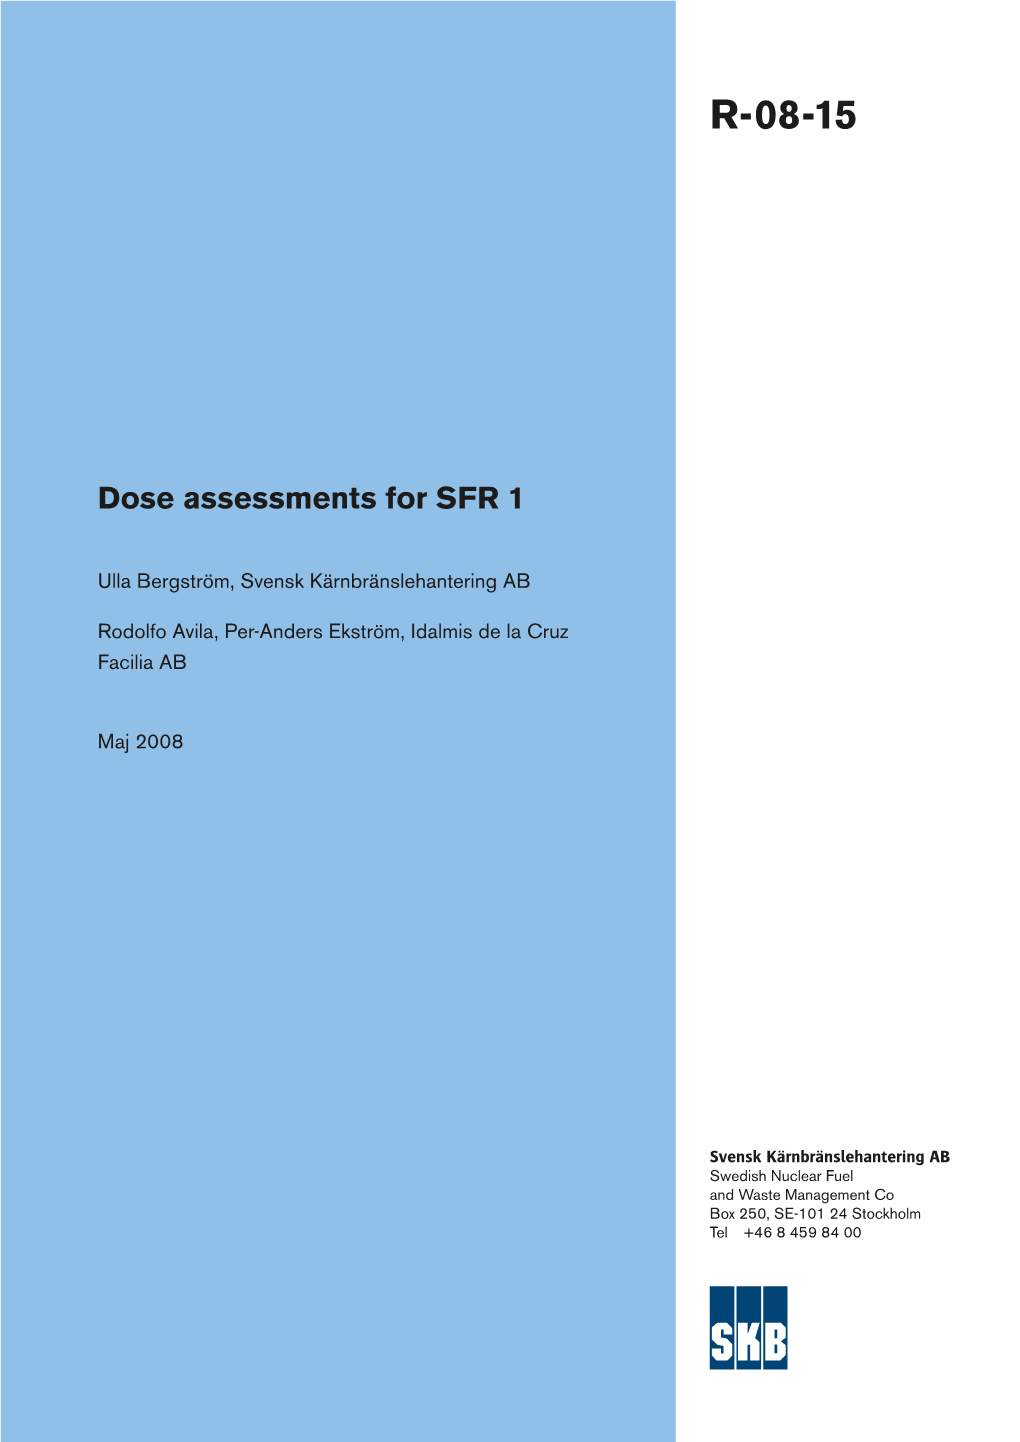 Dose Assessments for SFR 1 Dose Assessments for SFR R-08-15